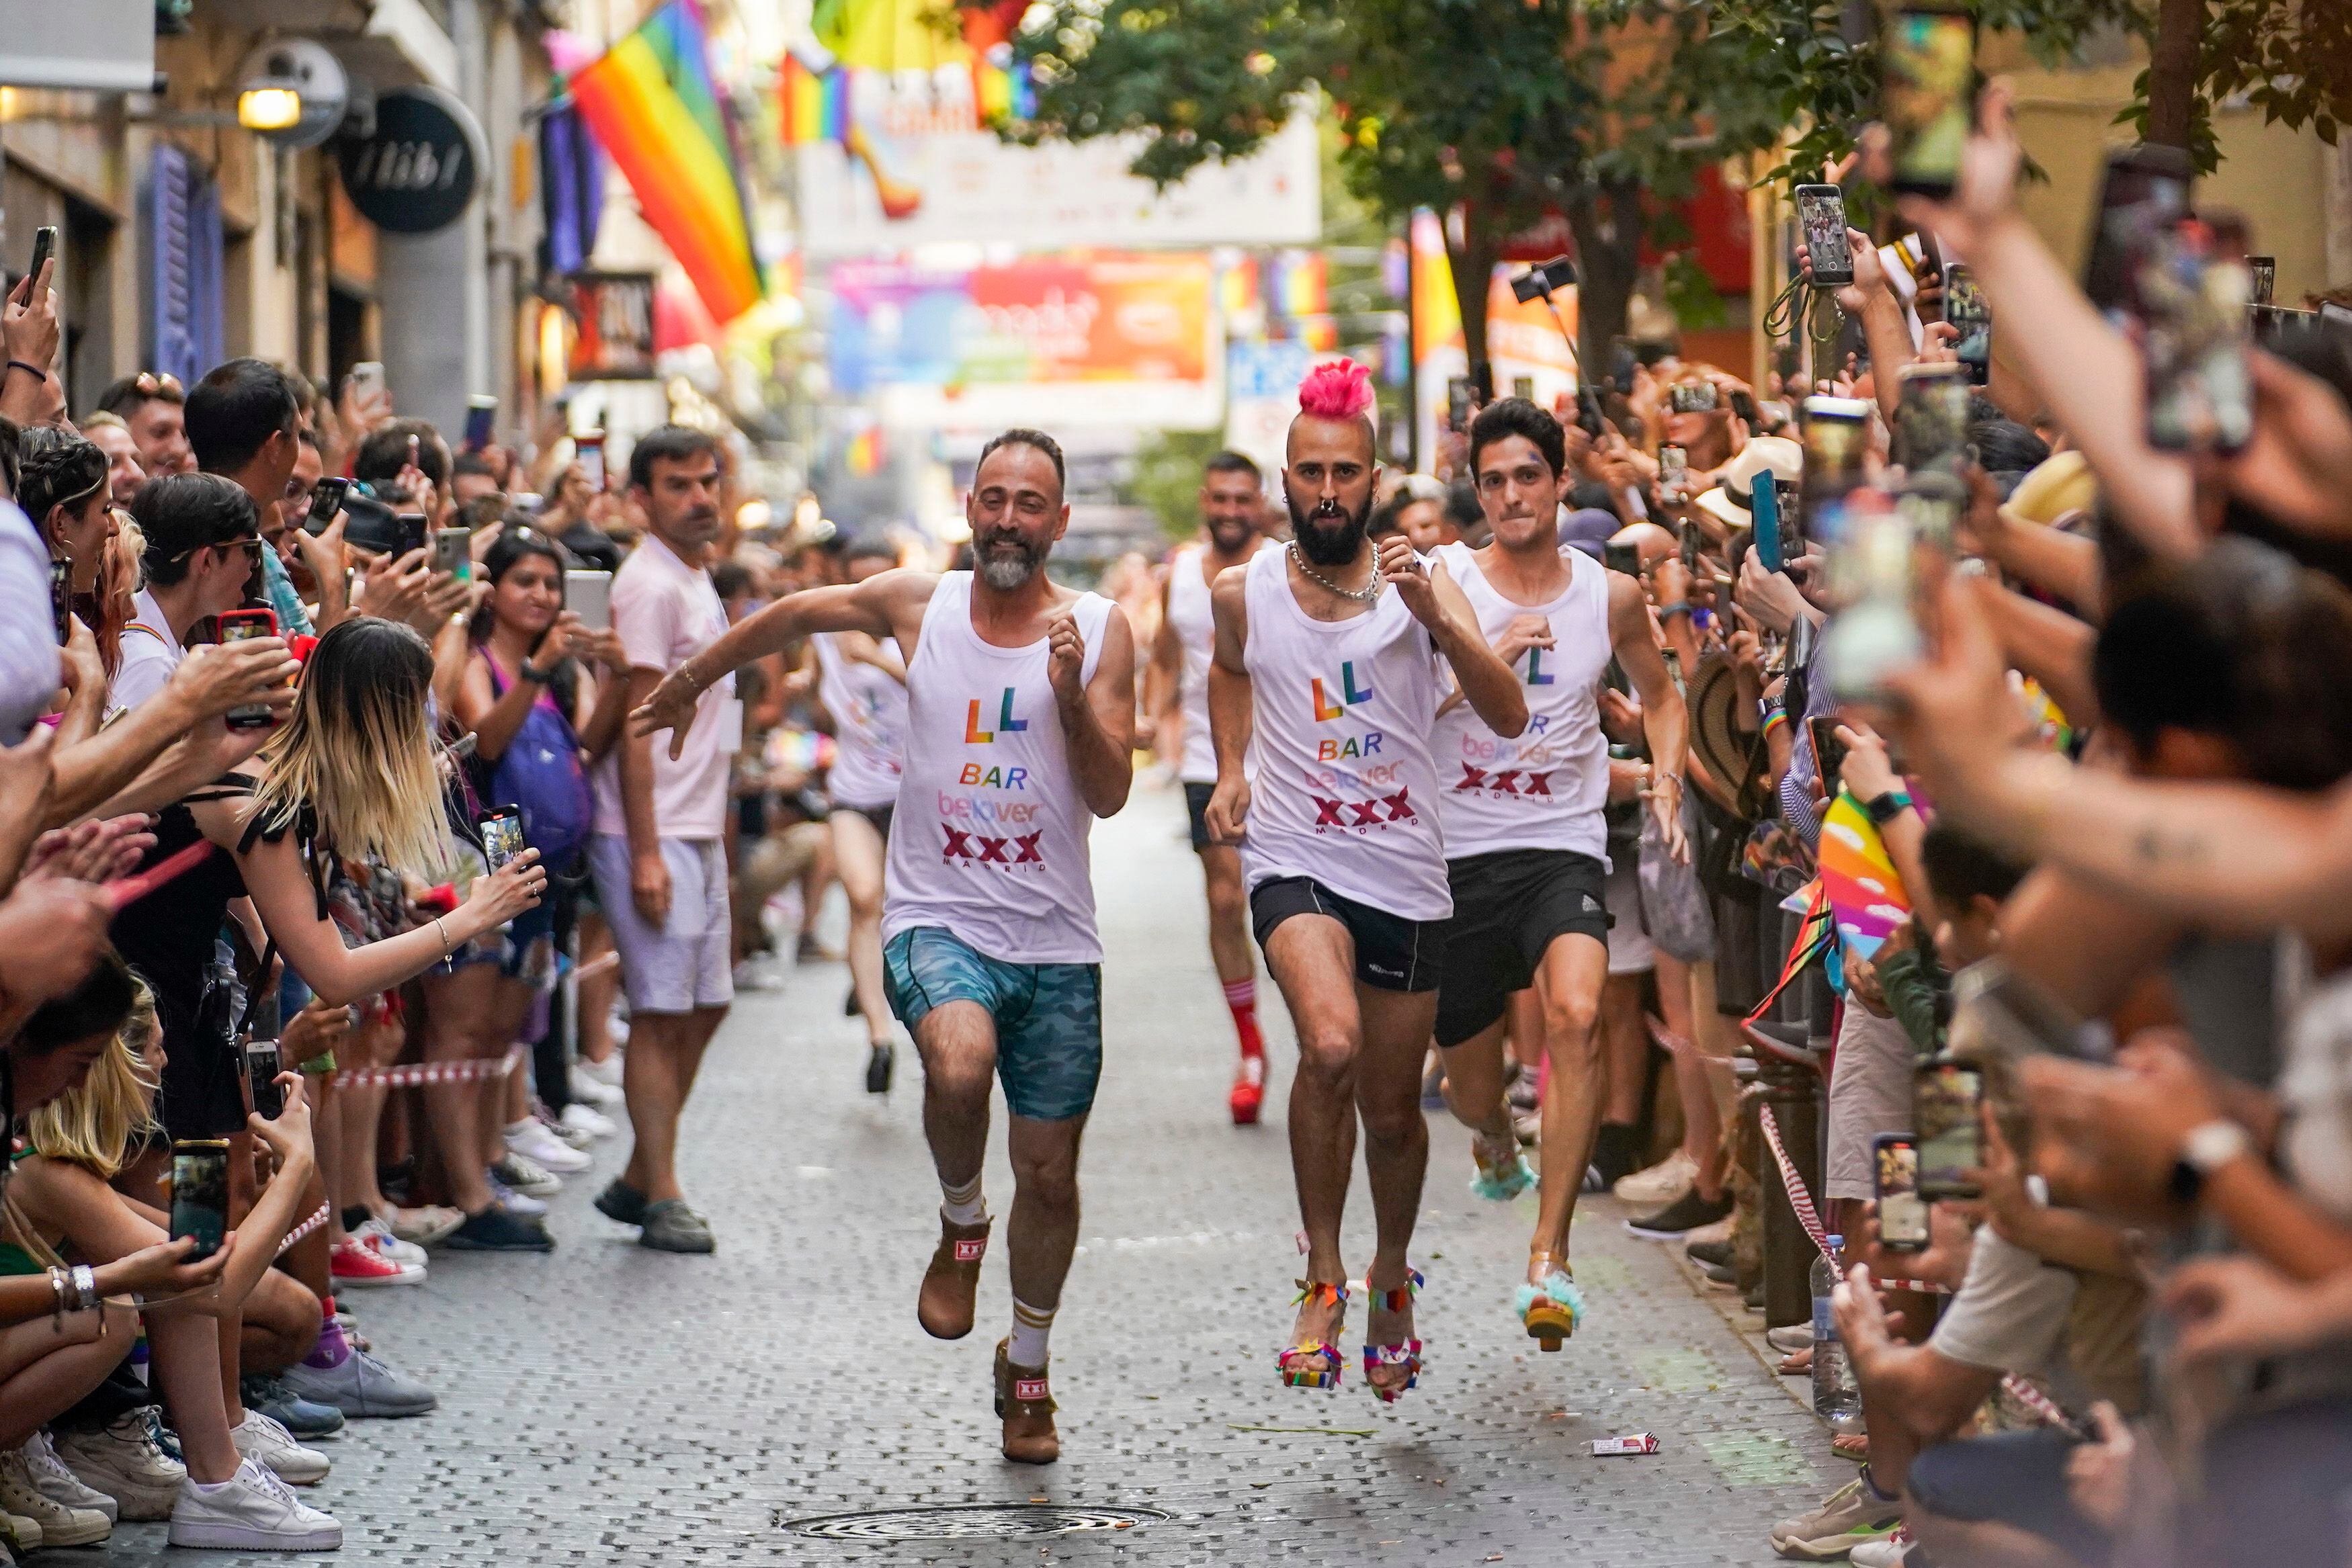 Participantes corren en la Carrera de Tacones celebrada con motivo de la semana del Orgullo en el barrio de Chueca en Madrid. ANDREA COMAS